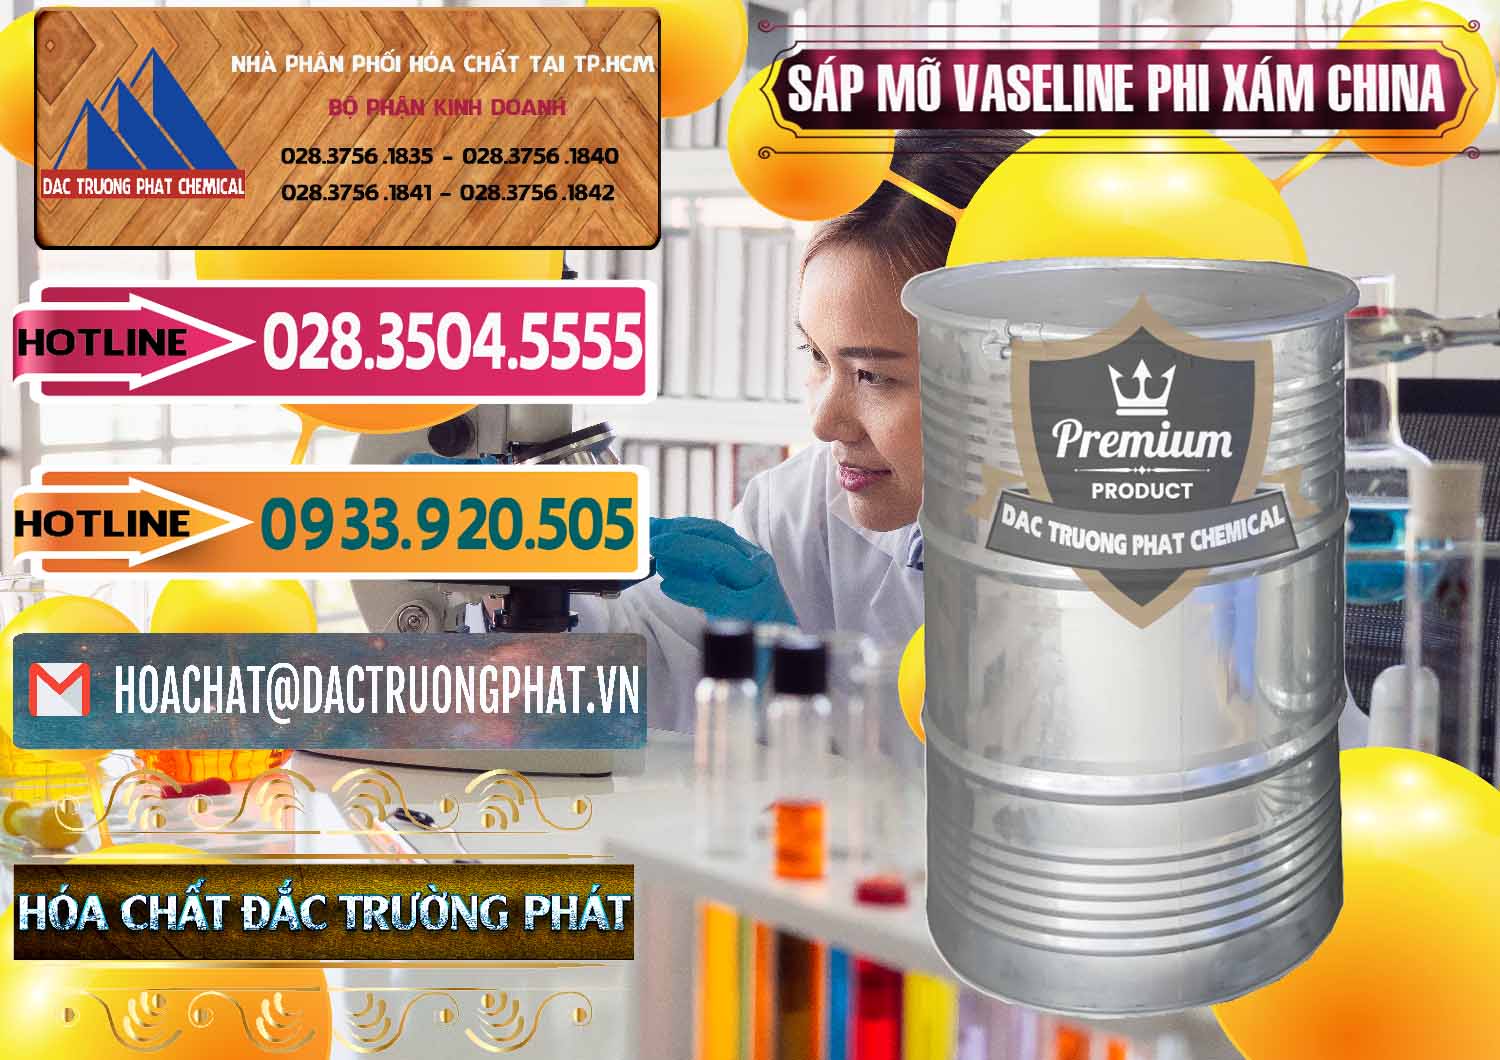 Nơi chuyên bán và cung ứng Sáp Mỡ Vaseline Phi Xám Trung Quốc China - 0291 - Cty chuyên nhập khẩu và cung cấp hóa chất tại TP.HCM - dactruongphat.vn